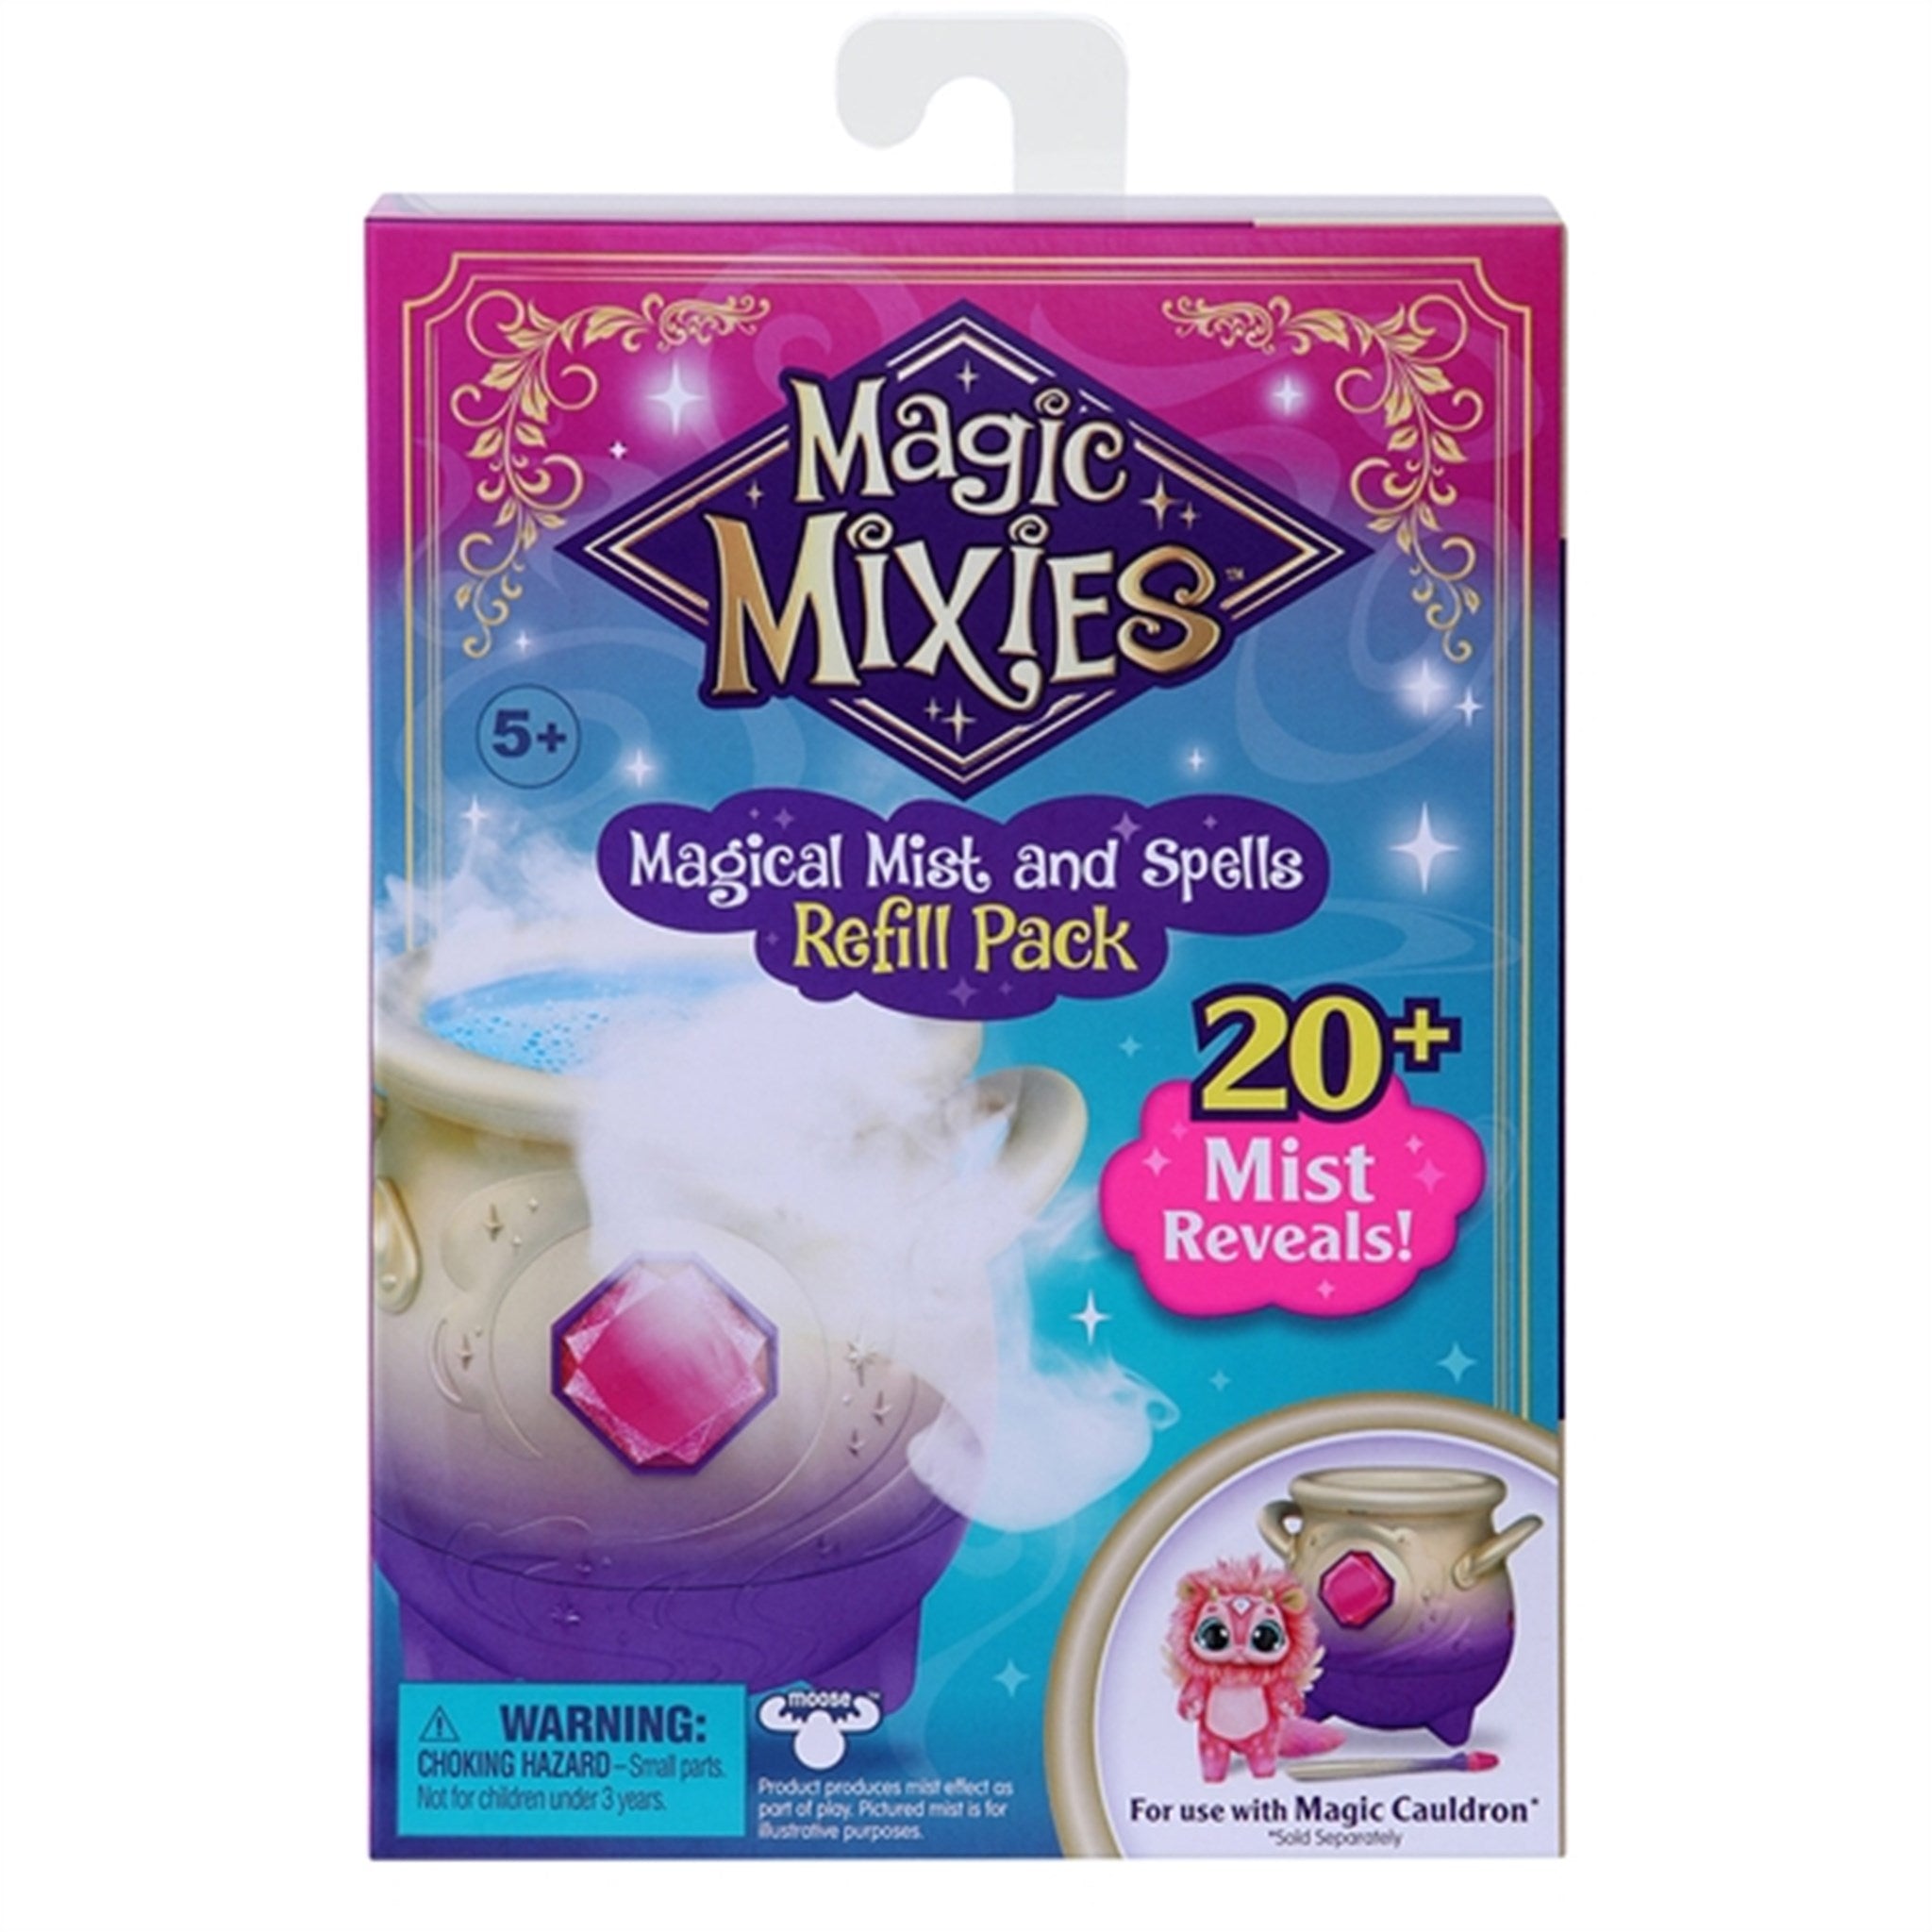 Magic Mixies Magic Refill set